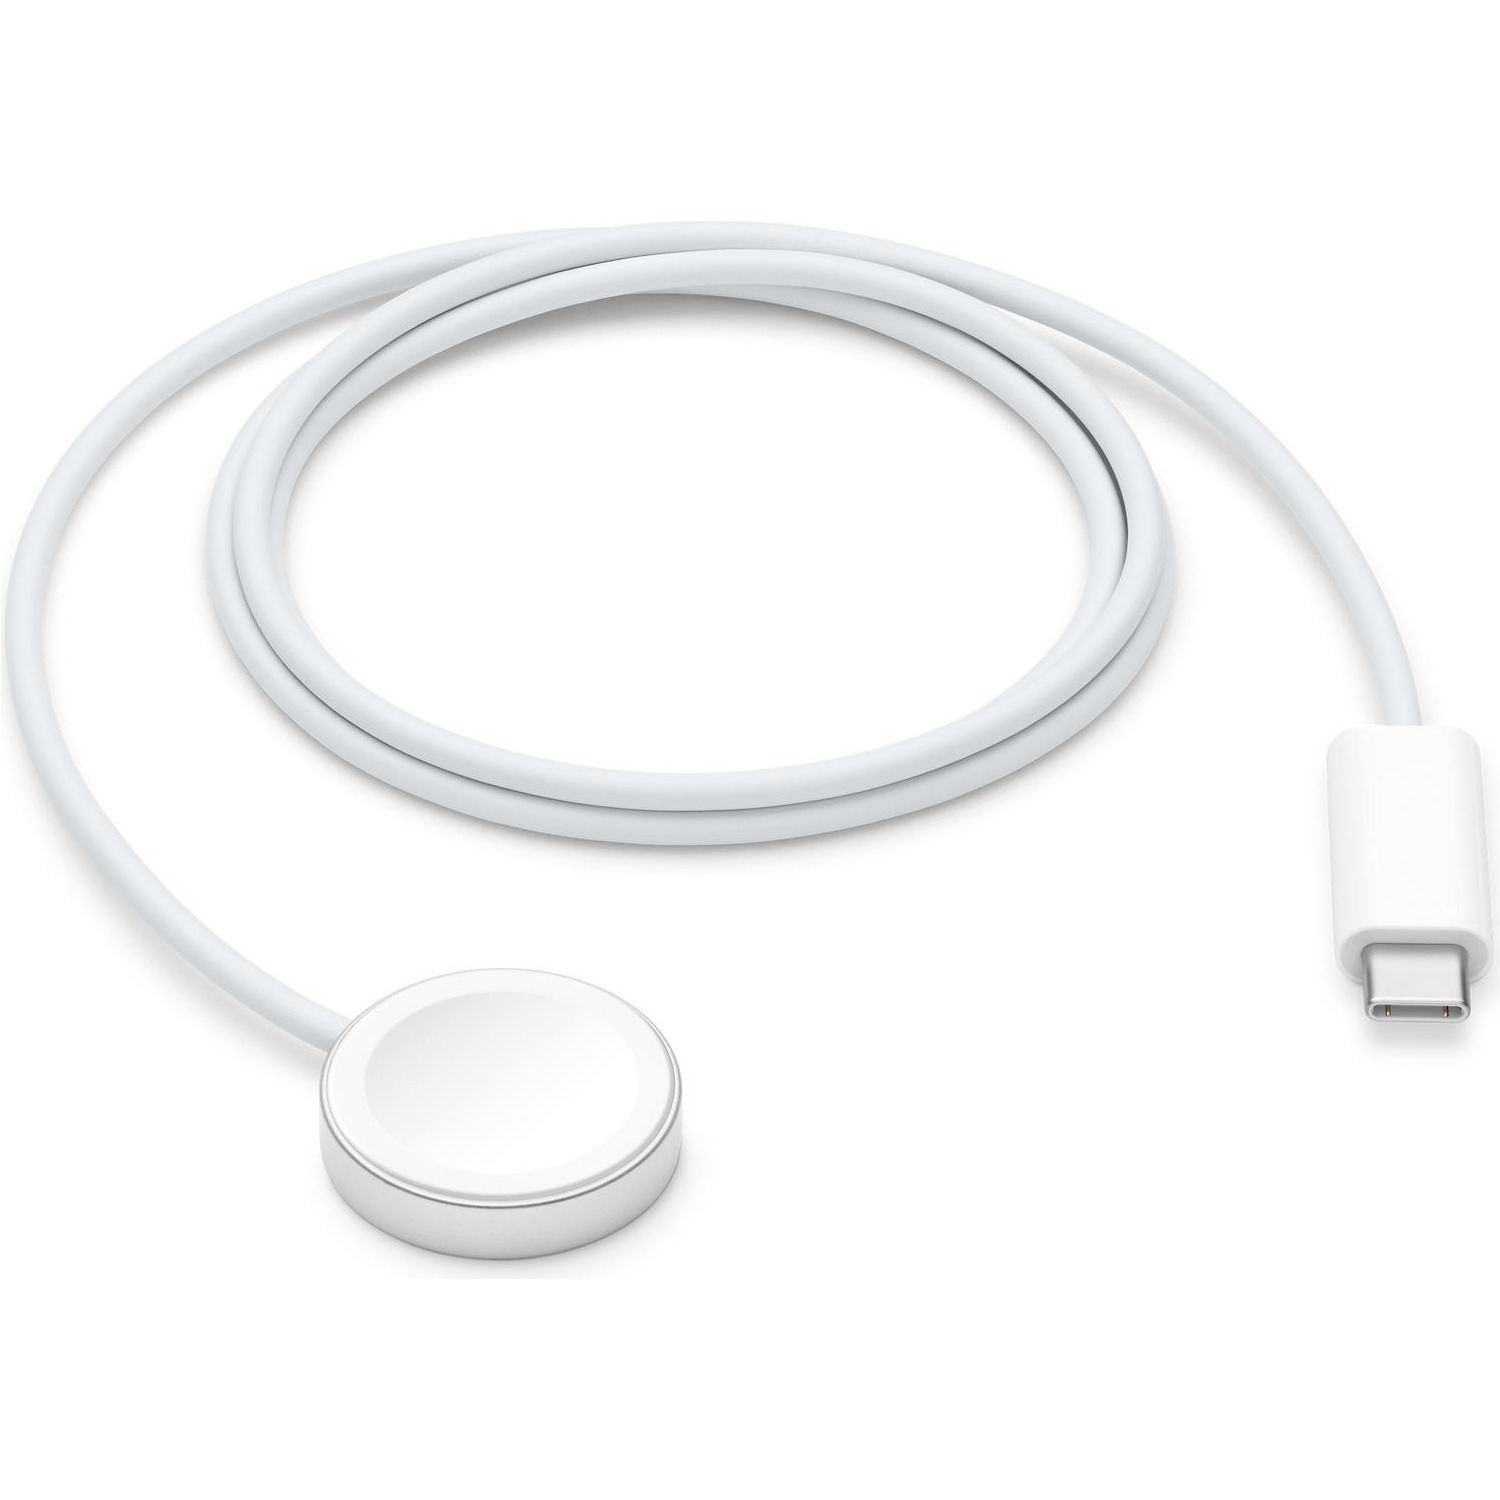 Immagine per Cavo magnetico Apple USB-C per ricarica Apple Watch 1 metro da DIMOStore